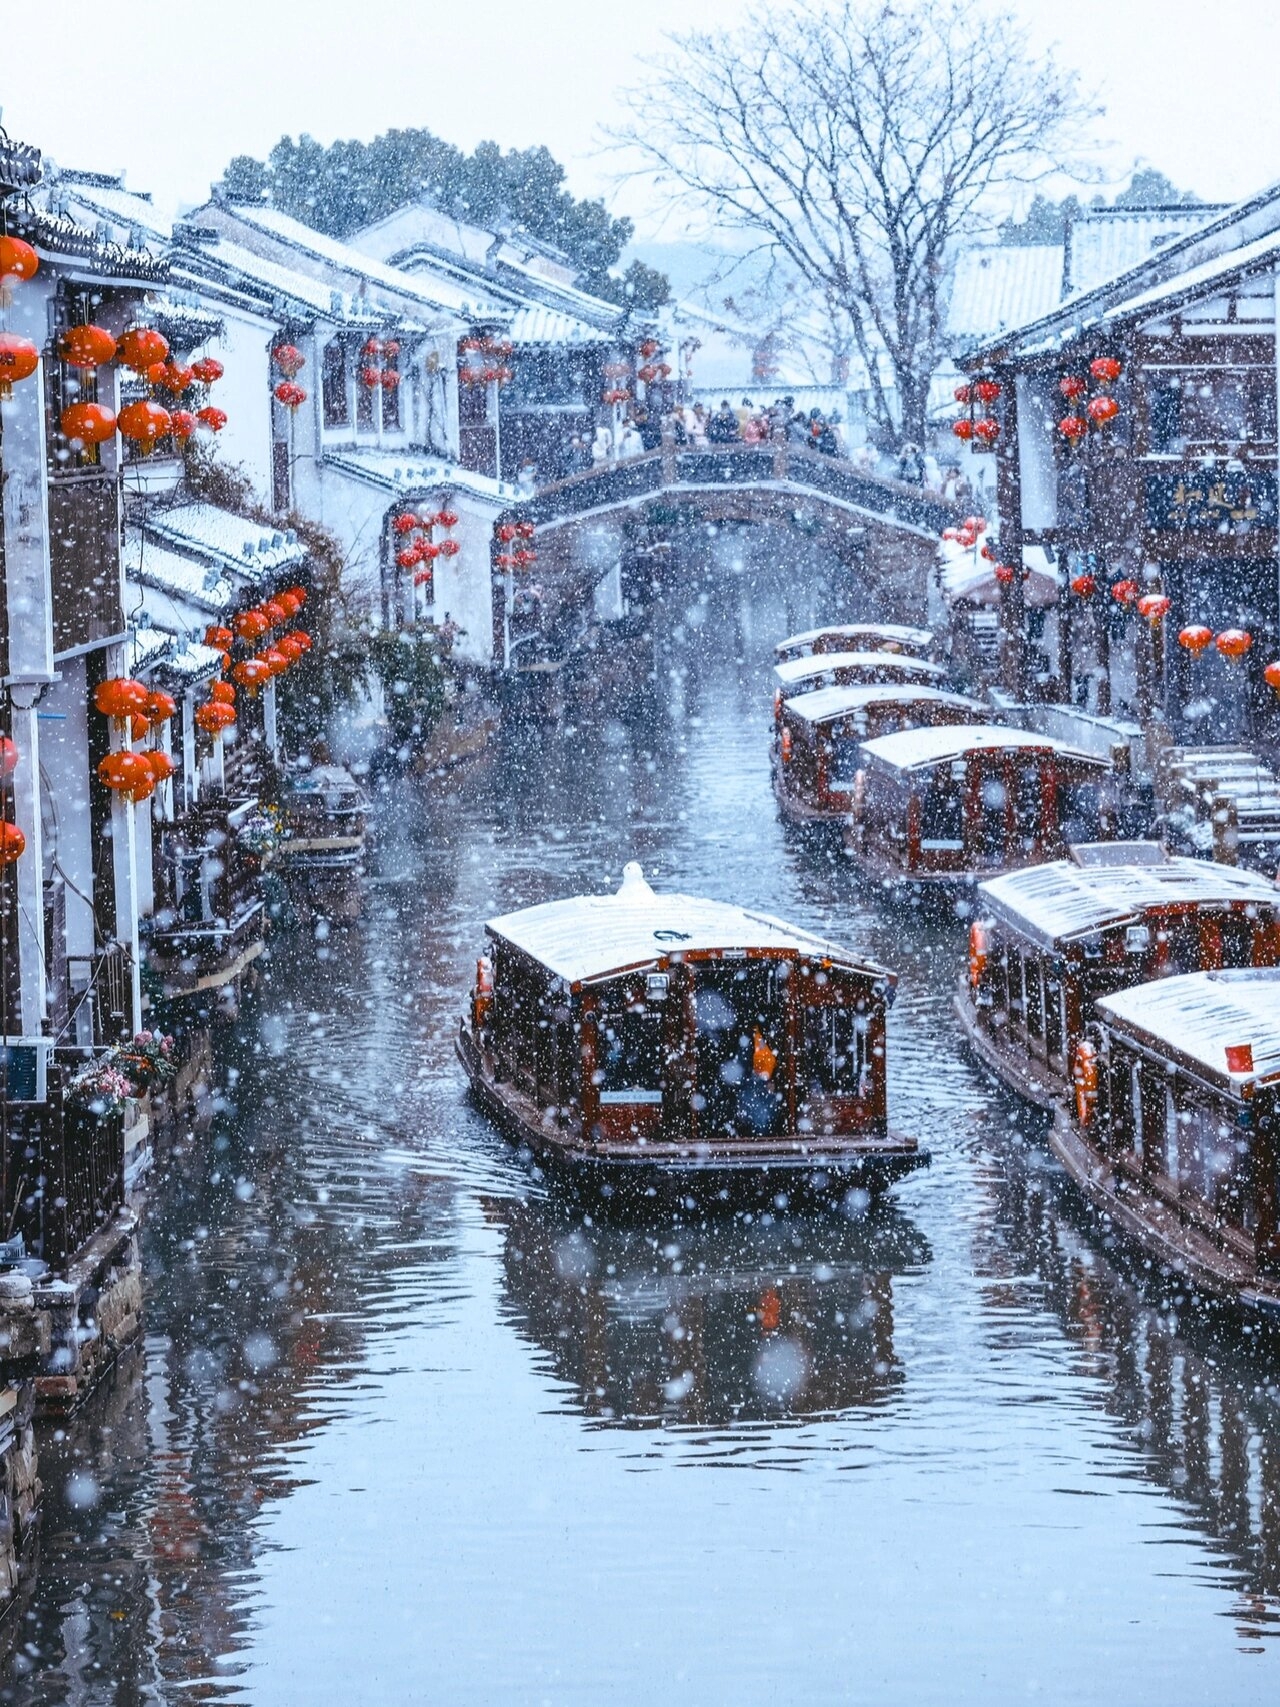 苏州初雪❄️原来这就是古人诗中的姑苏城啊❄️